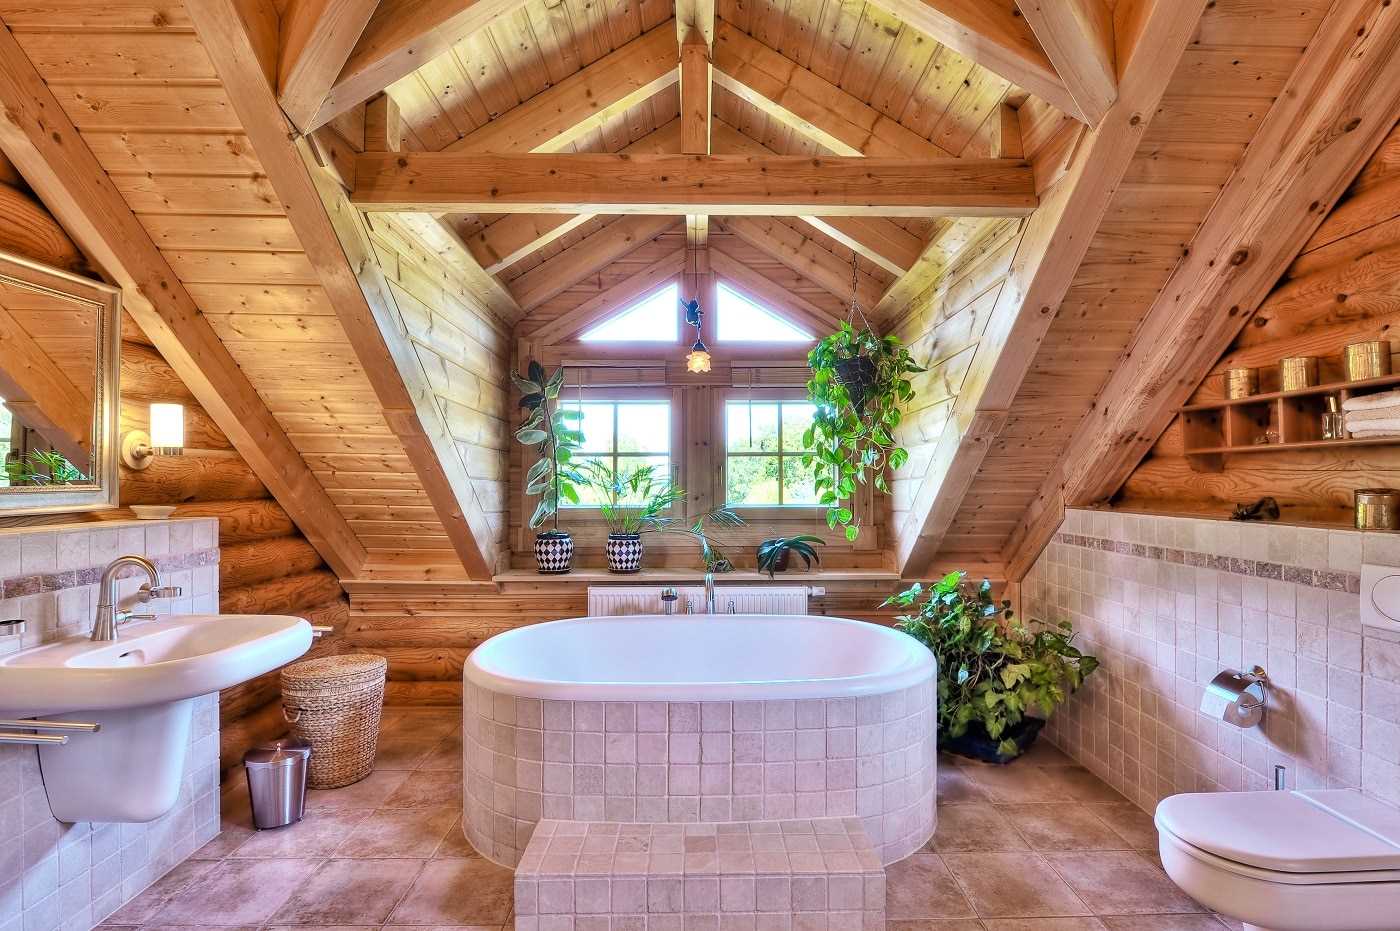 Ванная комната в деревянном доме (75 фото): интересные решения по обустройству, как сделать ремонт в санузле на даче, отделка и дизайн своими руками